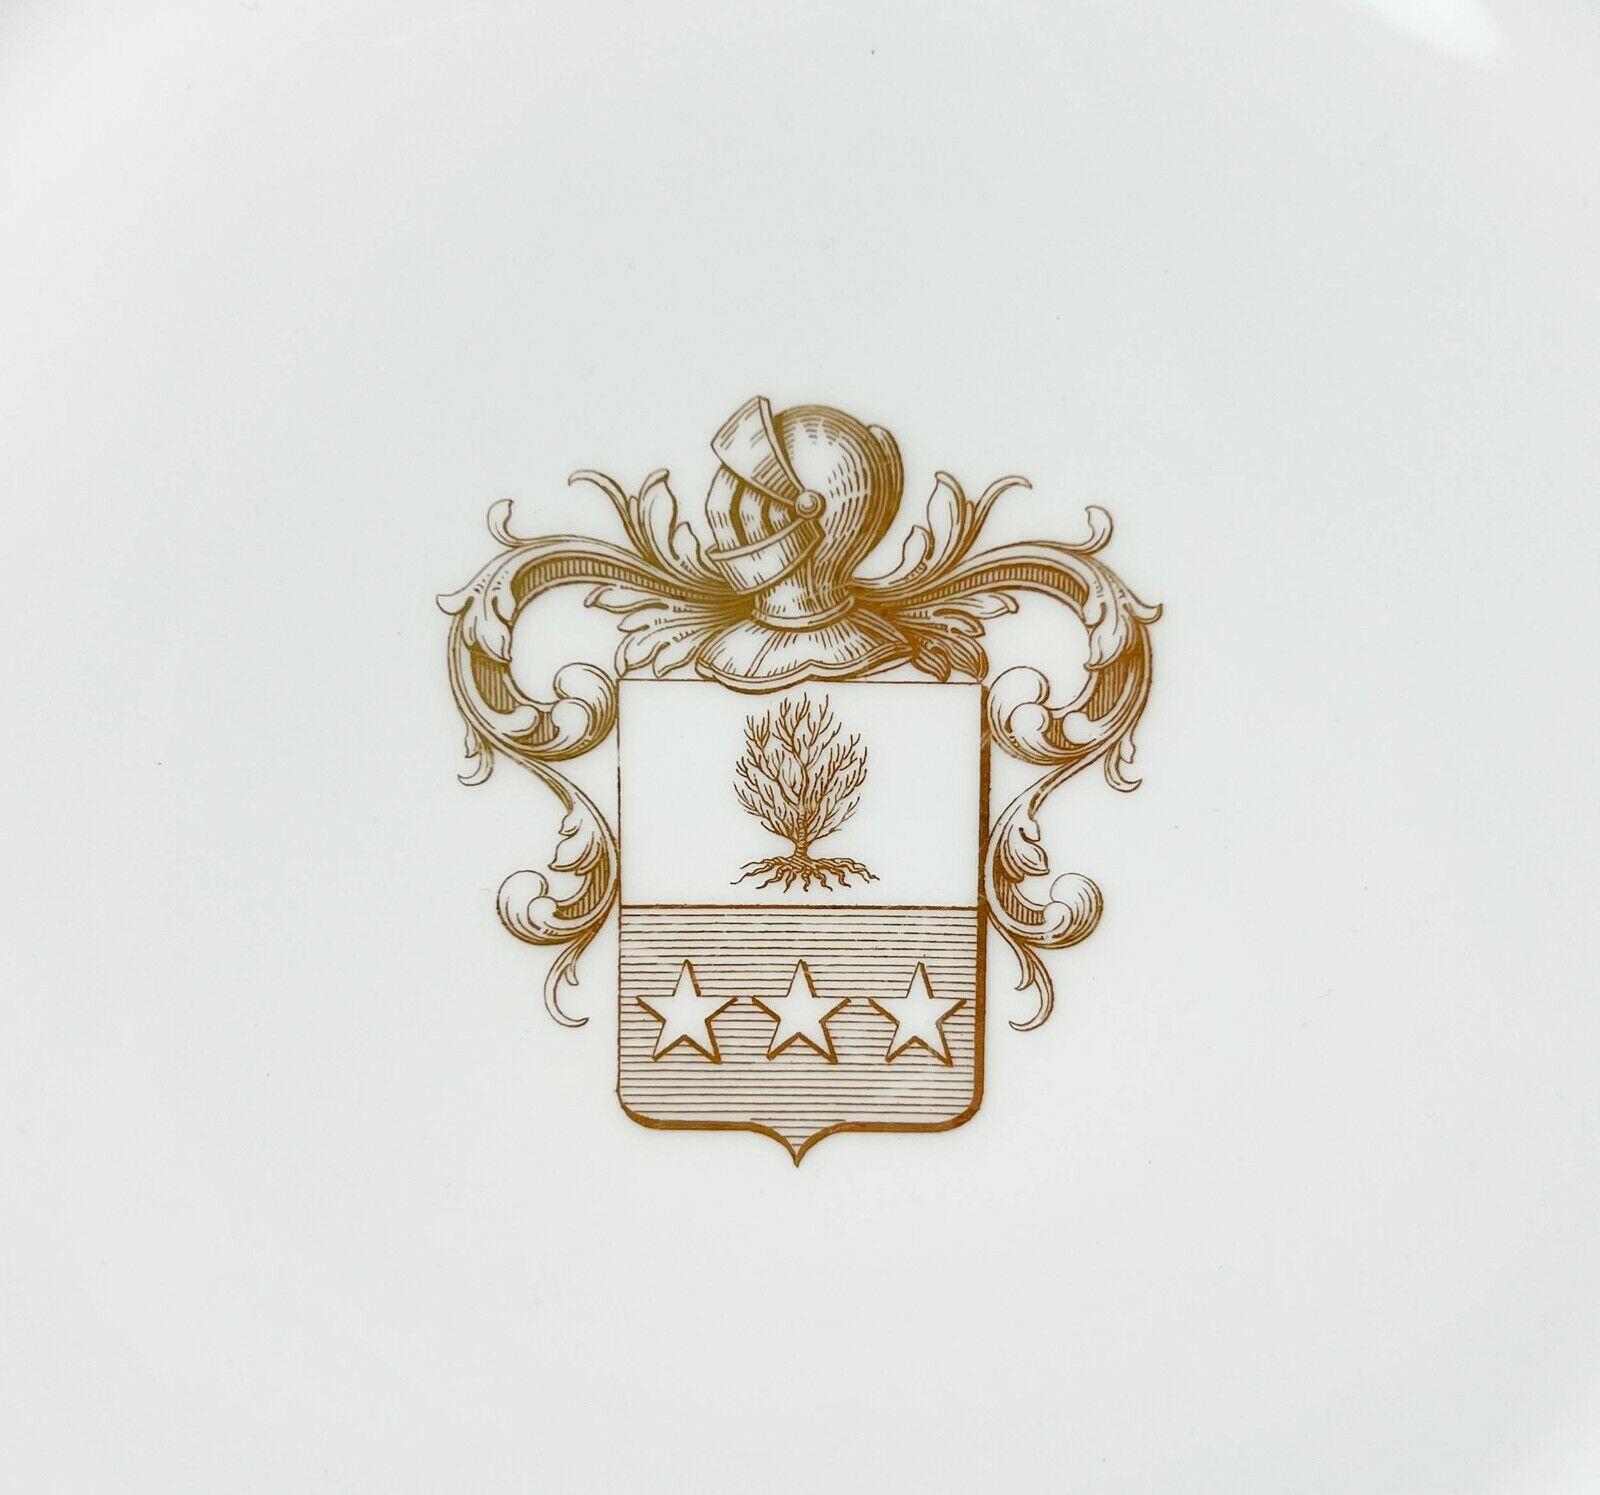 Paire d'assiettes de cabinet en porcelaine armoriée et dorée de la Manufacture de Sèvres, 1859 & 1860

Un fond blanc avec des armoiries dorées au centre présentant un casque avec des rinceaux feuillus, un arbre dans un bouclier avec trois étoiles.